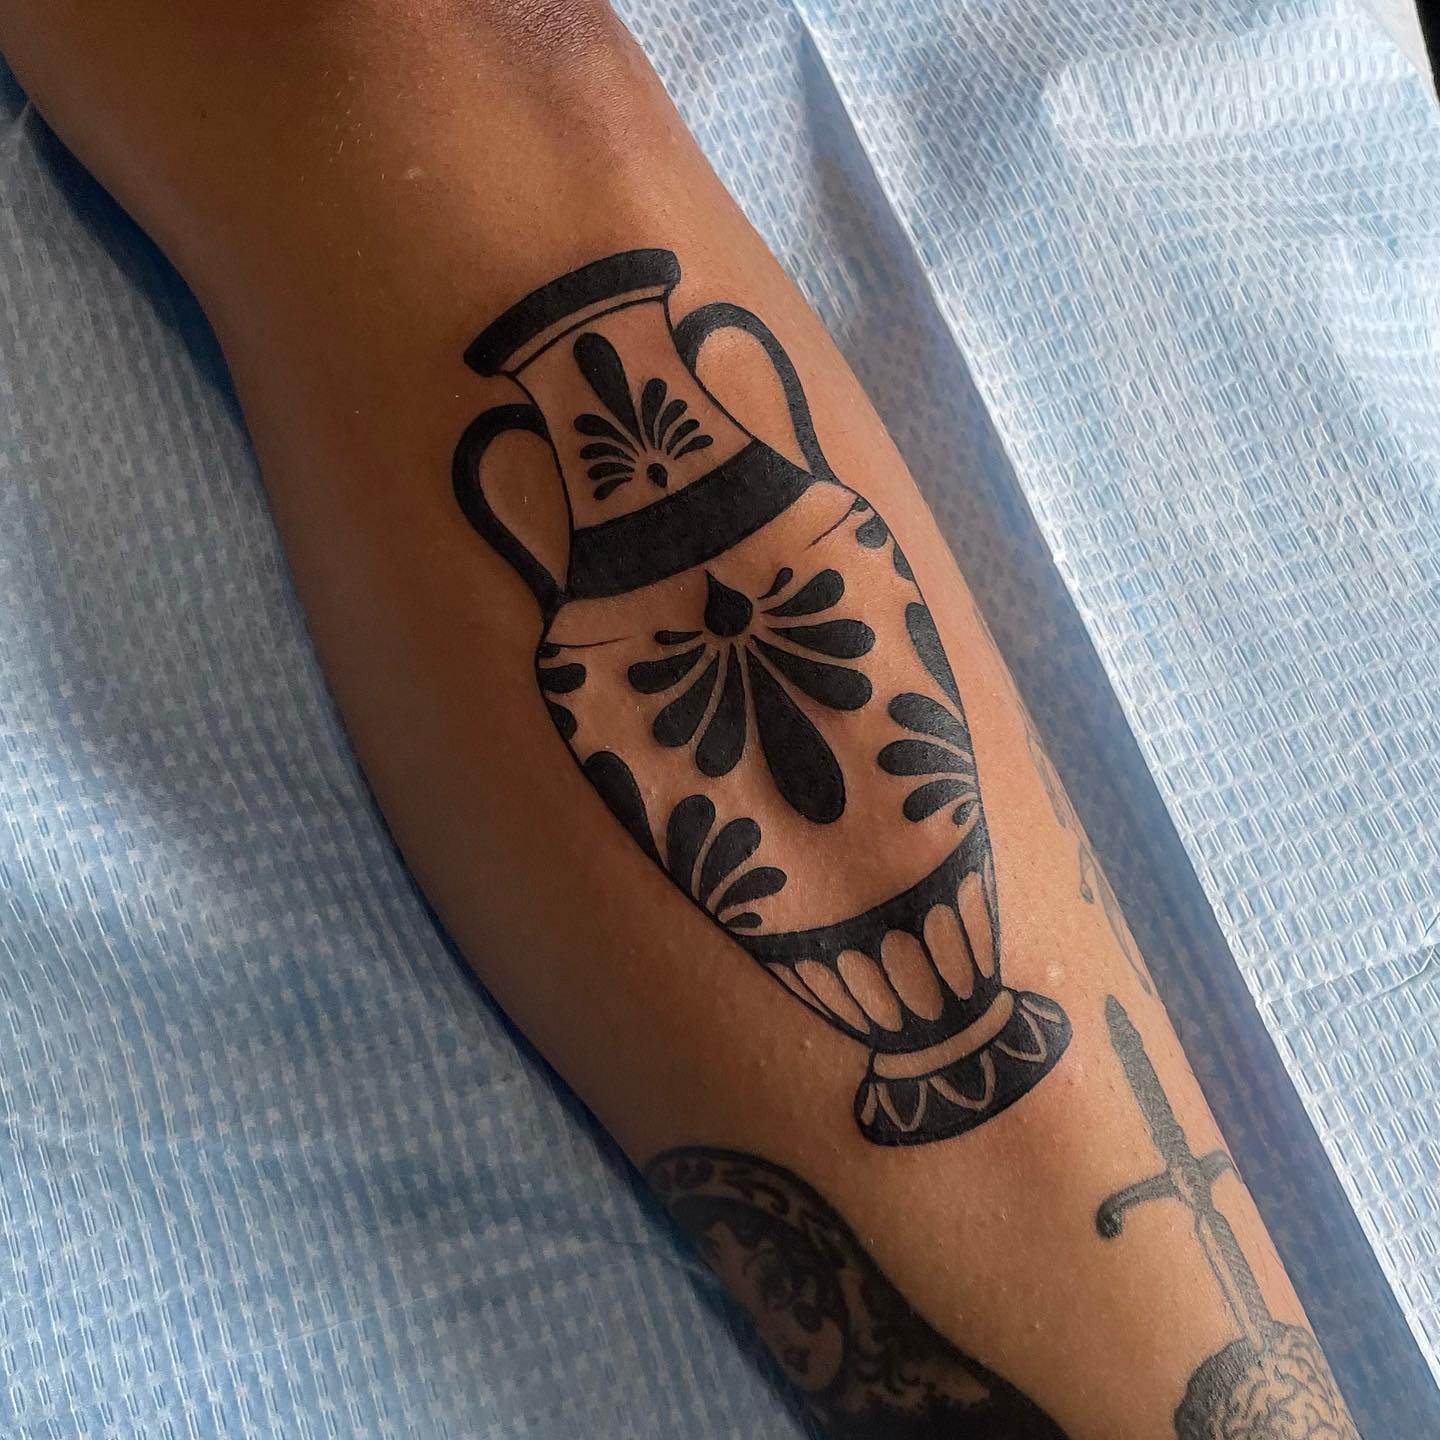 Small ornamental leg tattoo b y nicv.tattoos